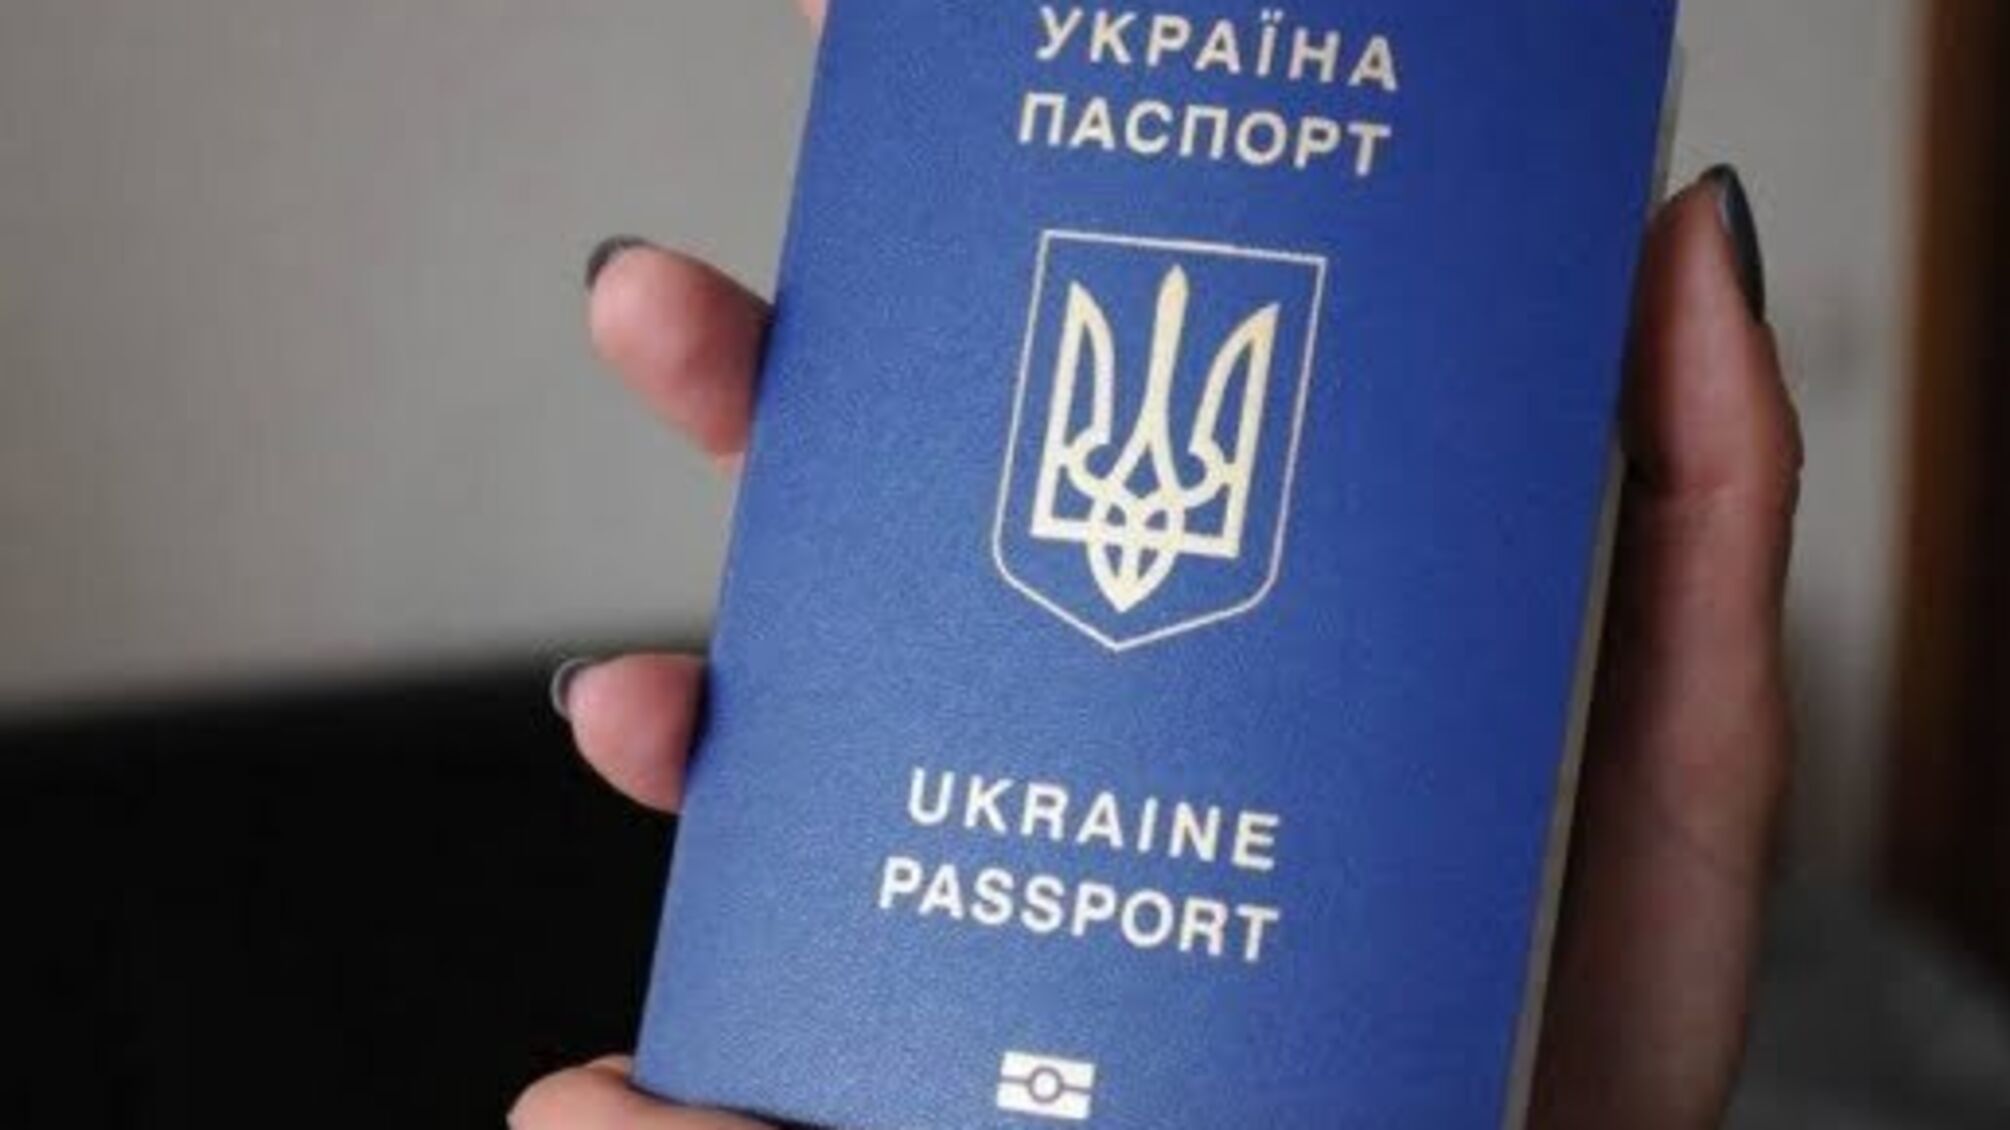 Ще 4 країни дозволили в'їзд українцям